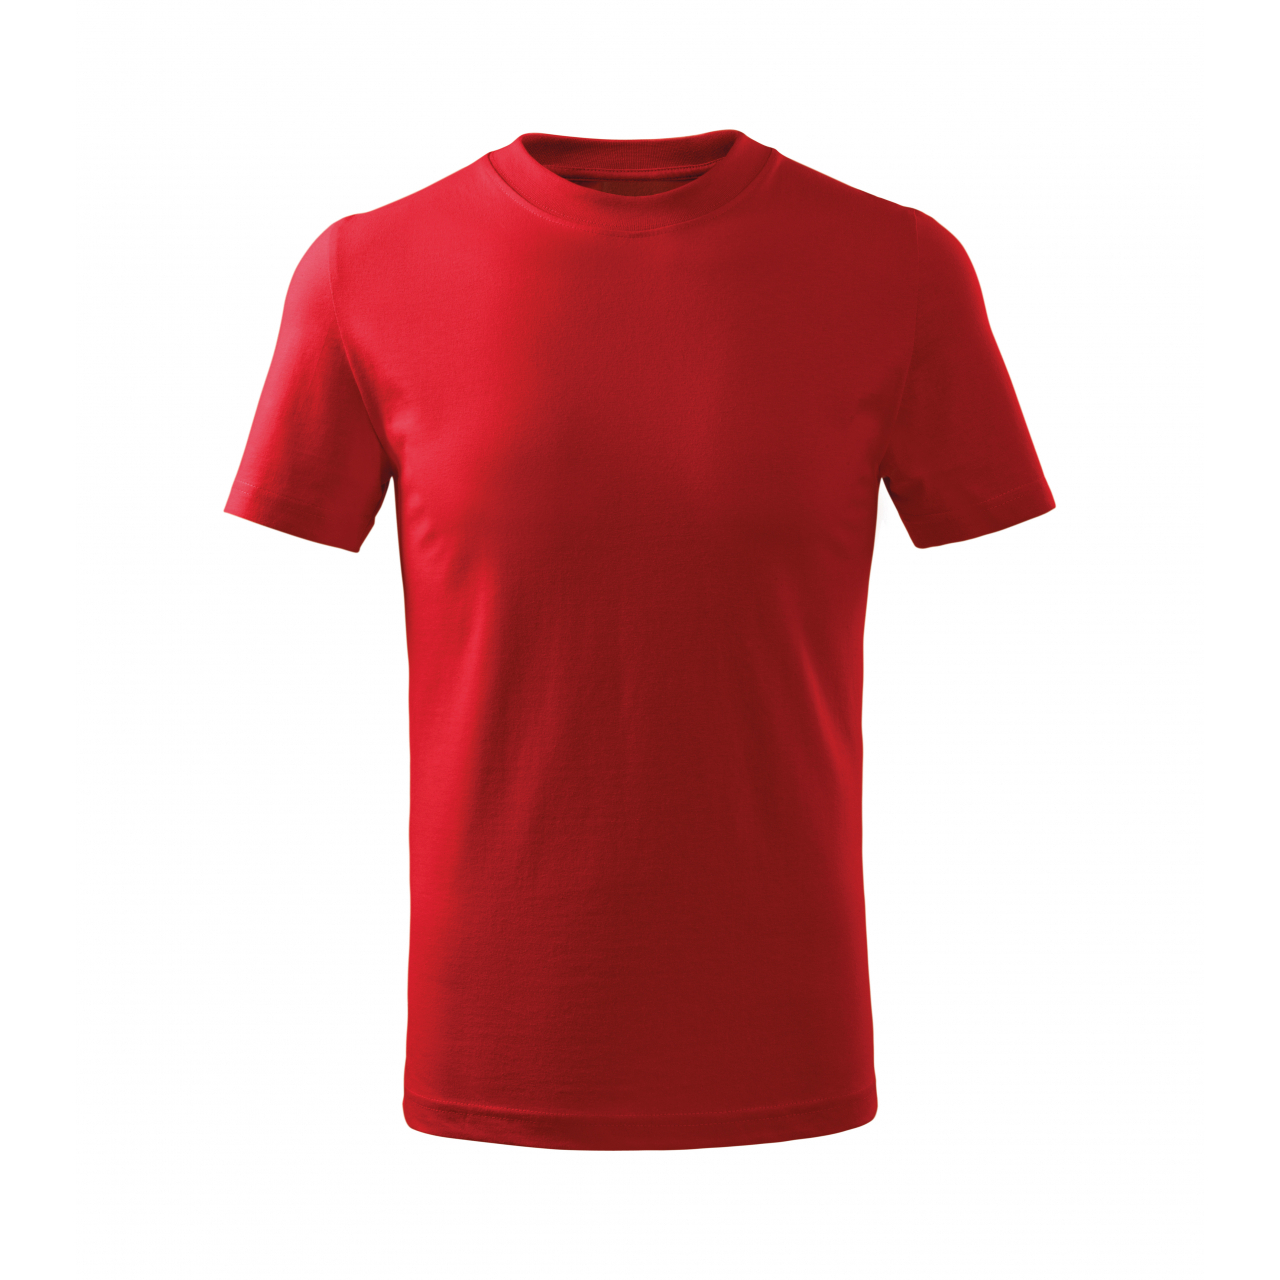 Tričko dětské Malfini Basic Free - červené, 110